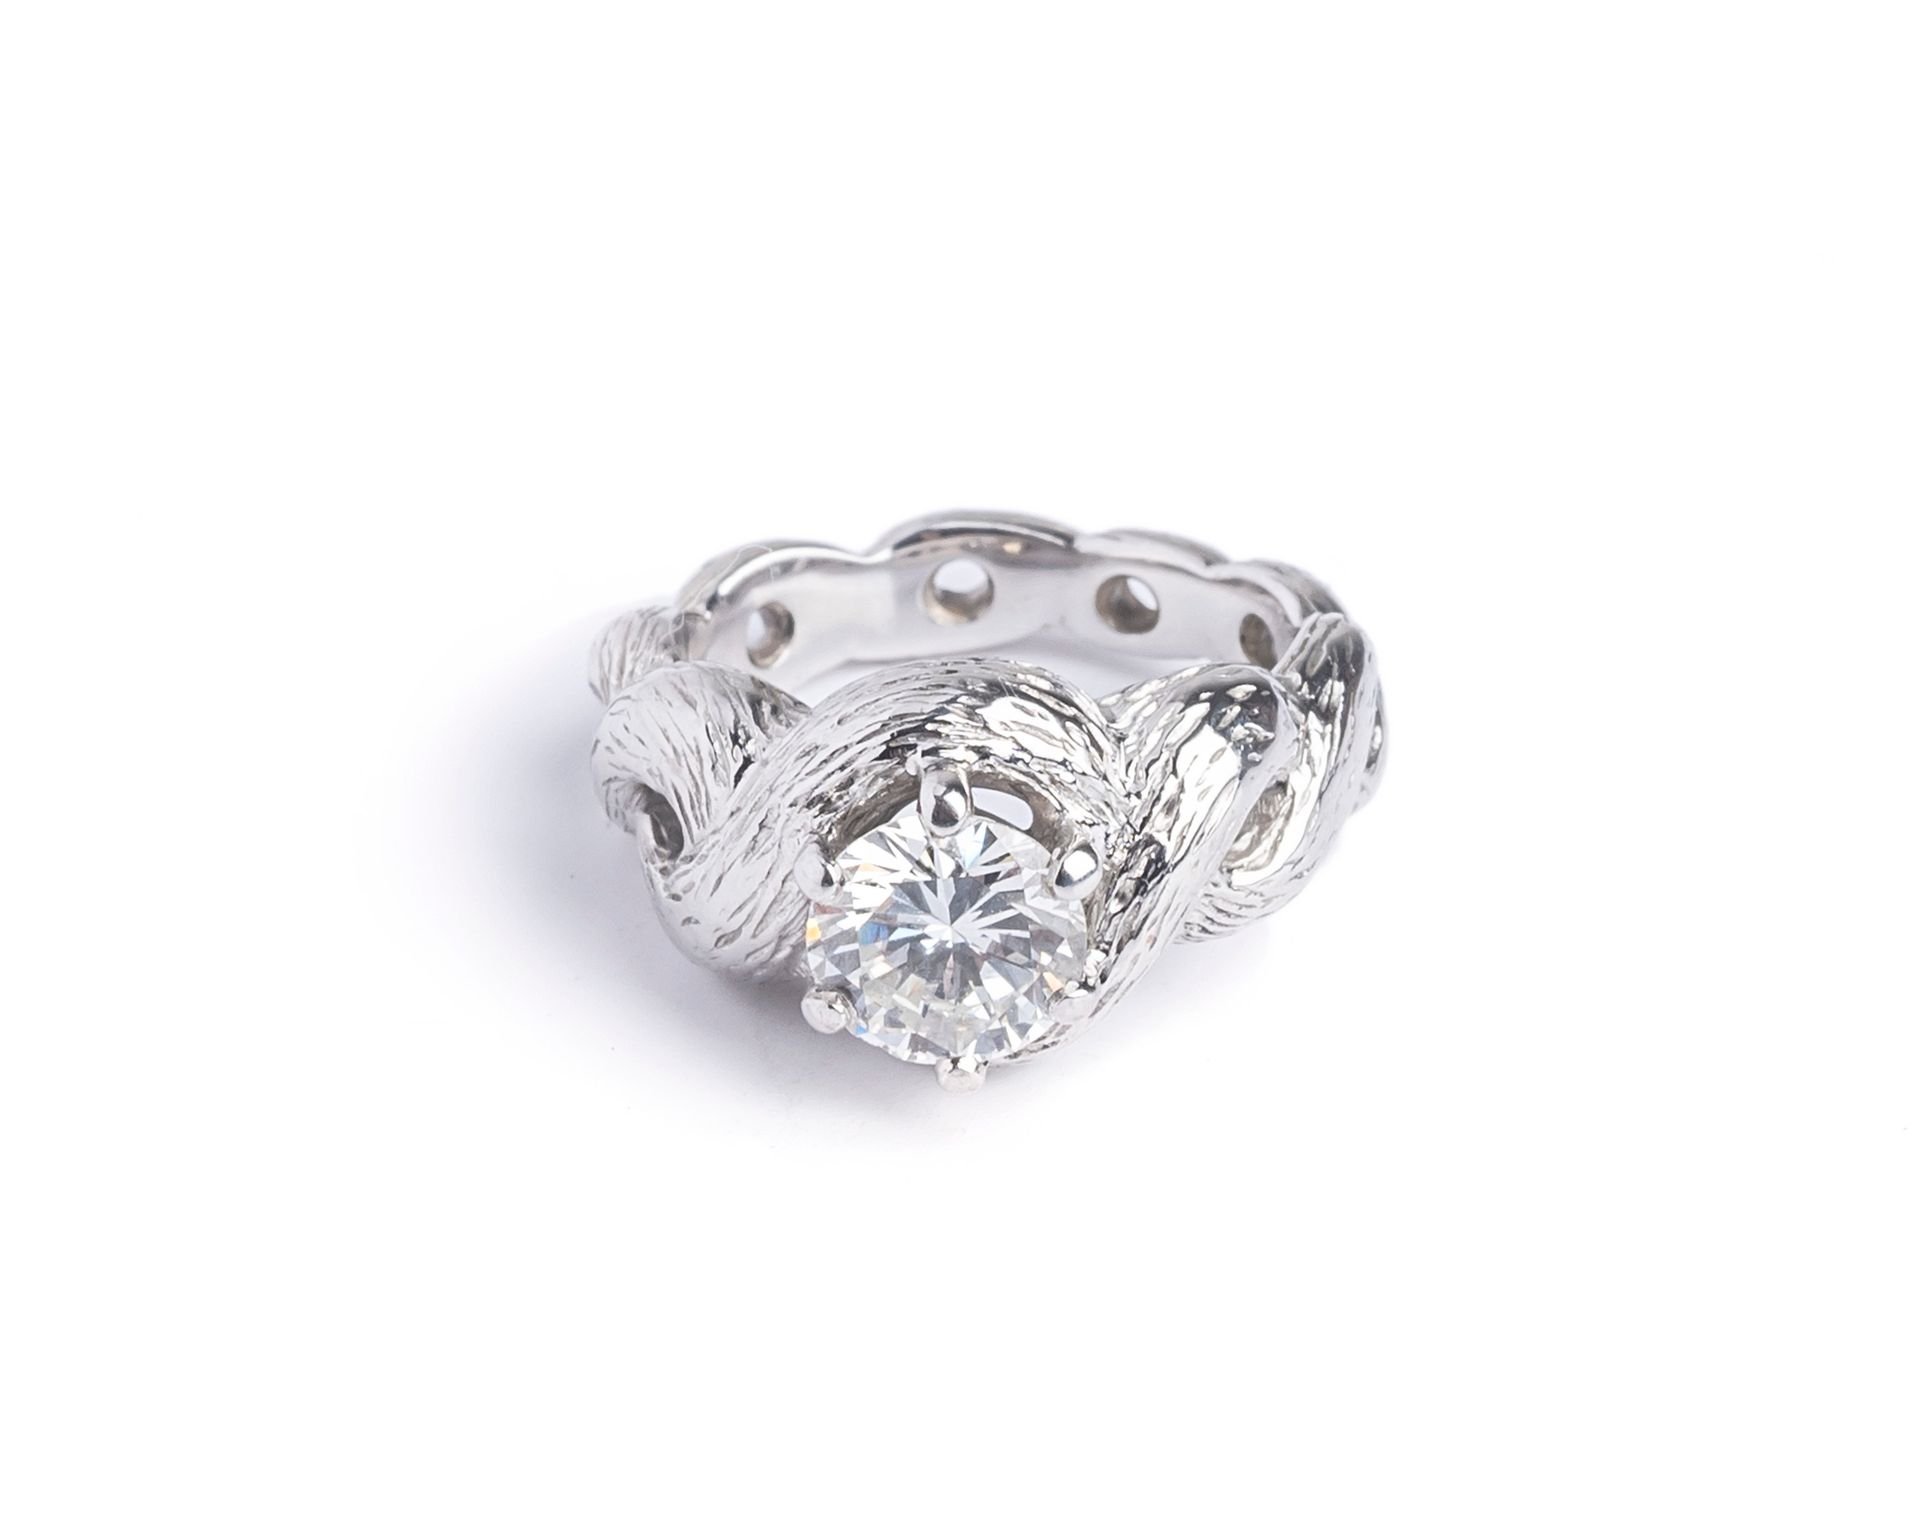 Null 18K（750千分之一）白金戒指，镶嵌着一颗圆形明亮式切割钻石，重约1.4克拉（镶嵌），镶嵌方式为扭绞式。
手指尺寸：48
毛重 : 12克